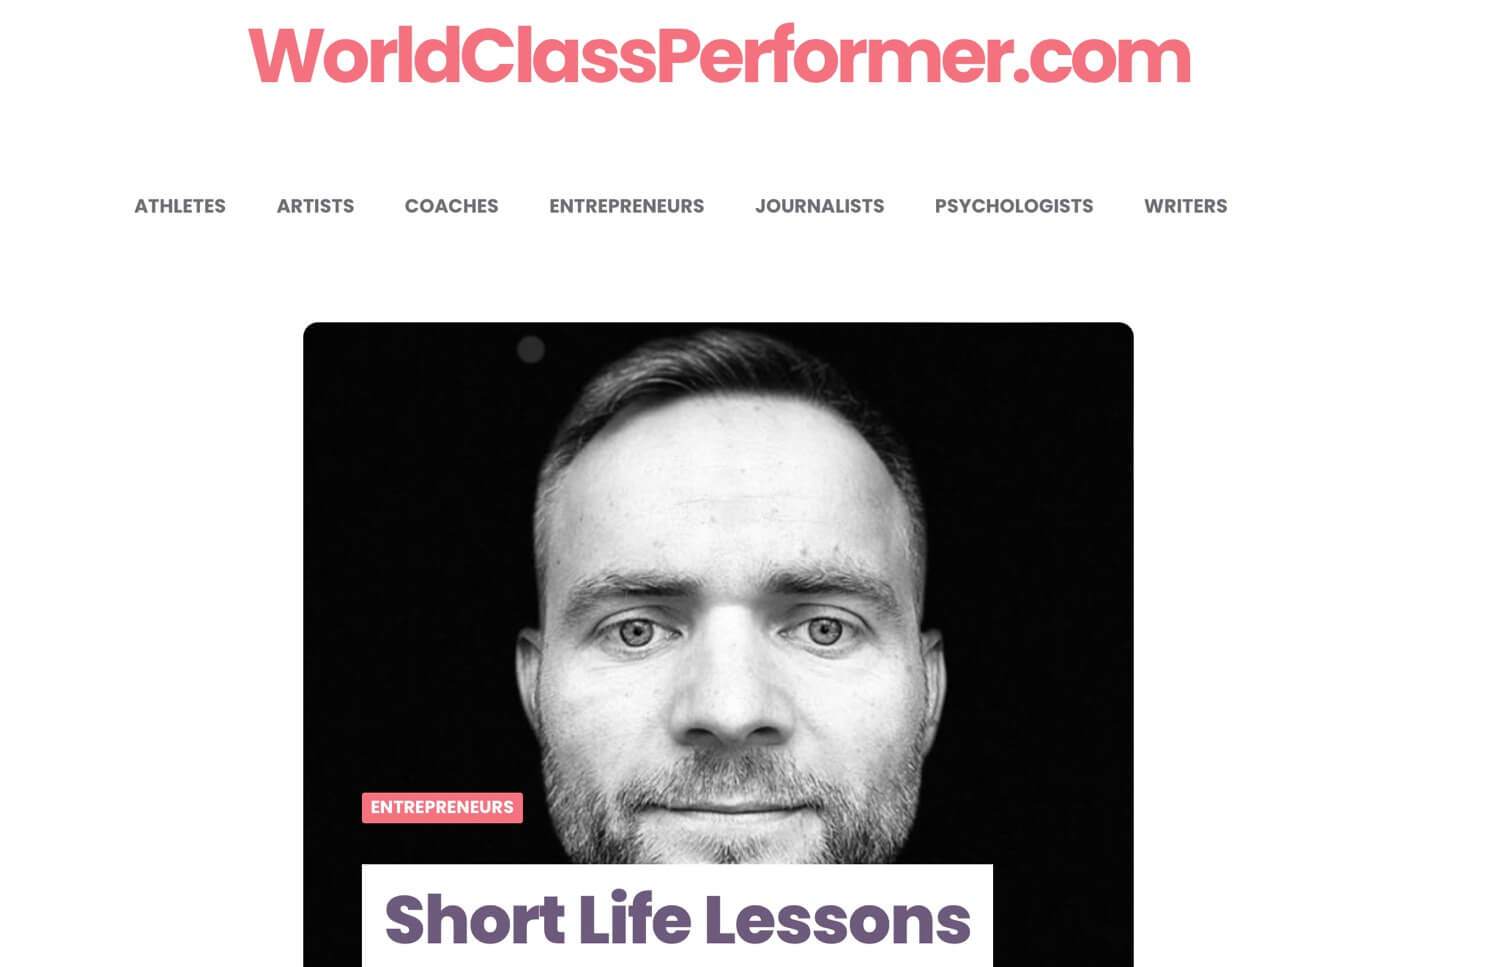 Short Life Lessons on WorldClassPerformer